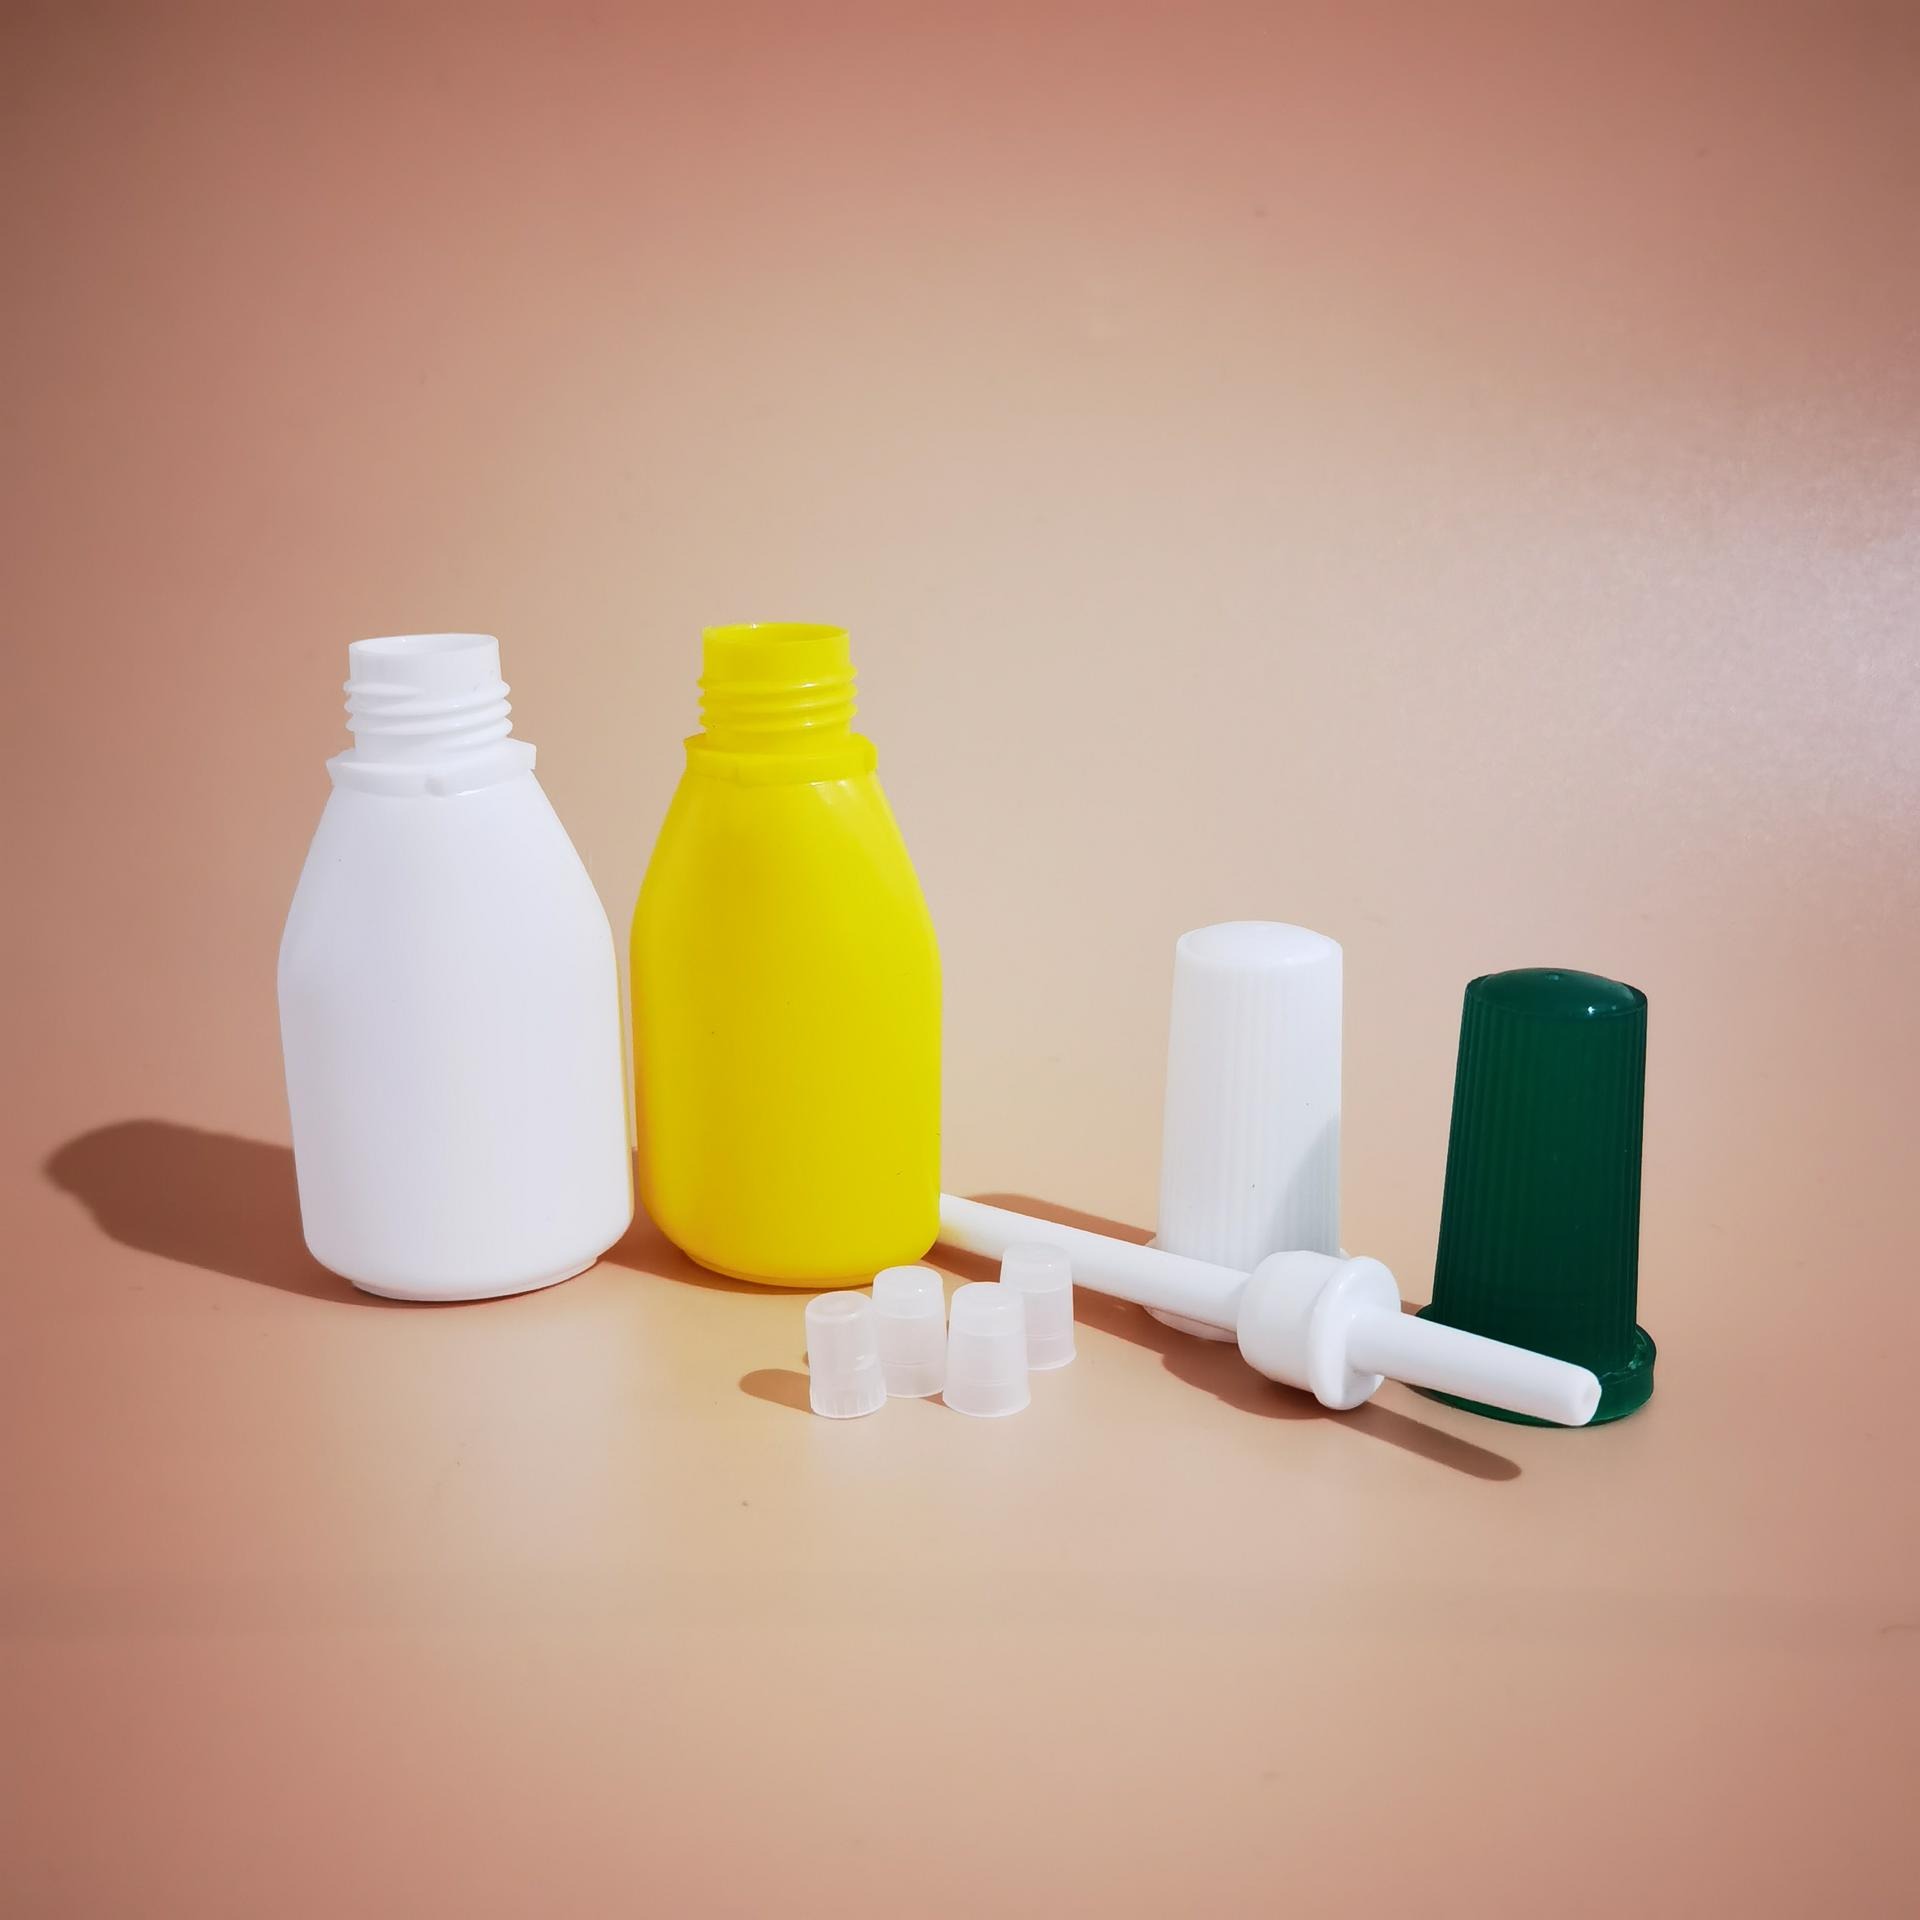 西瓜霜喷粉瓶 10g 20g喷粉瓶 西瓜霜瓶 粉末分装瓶 塑料牙粉瓶